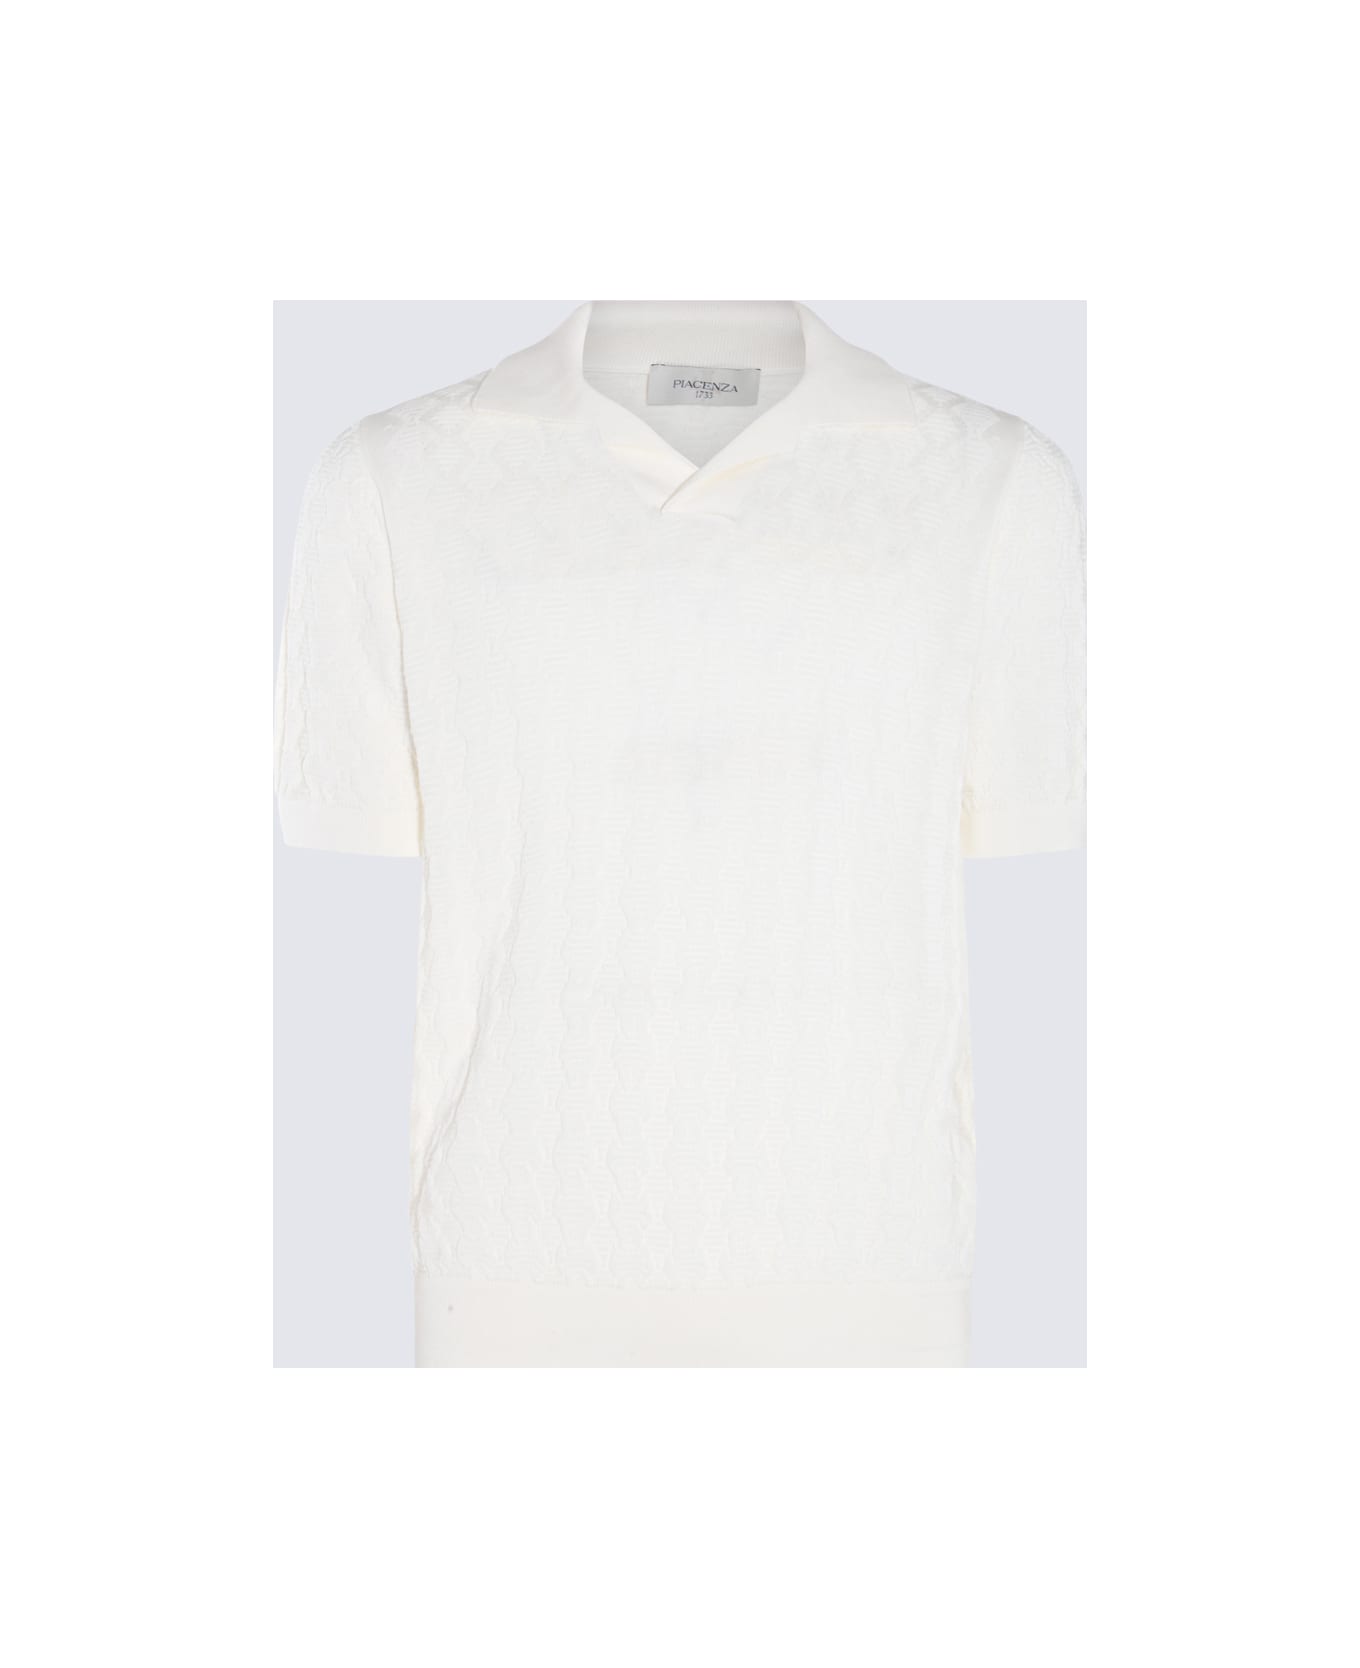 Piacenza Cashmere White Cotton Polo Shirt - White